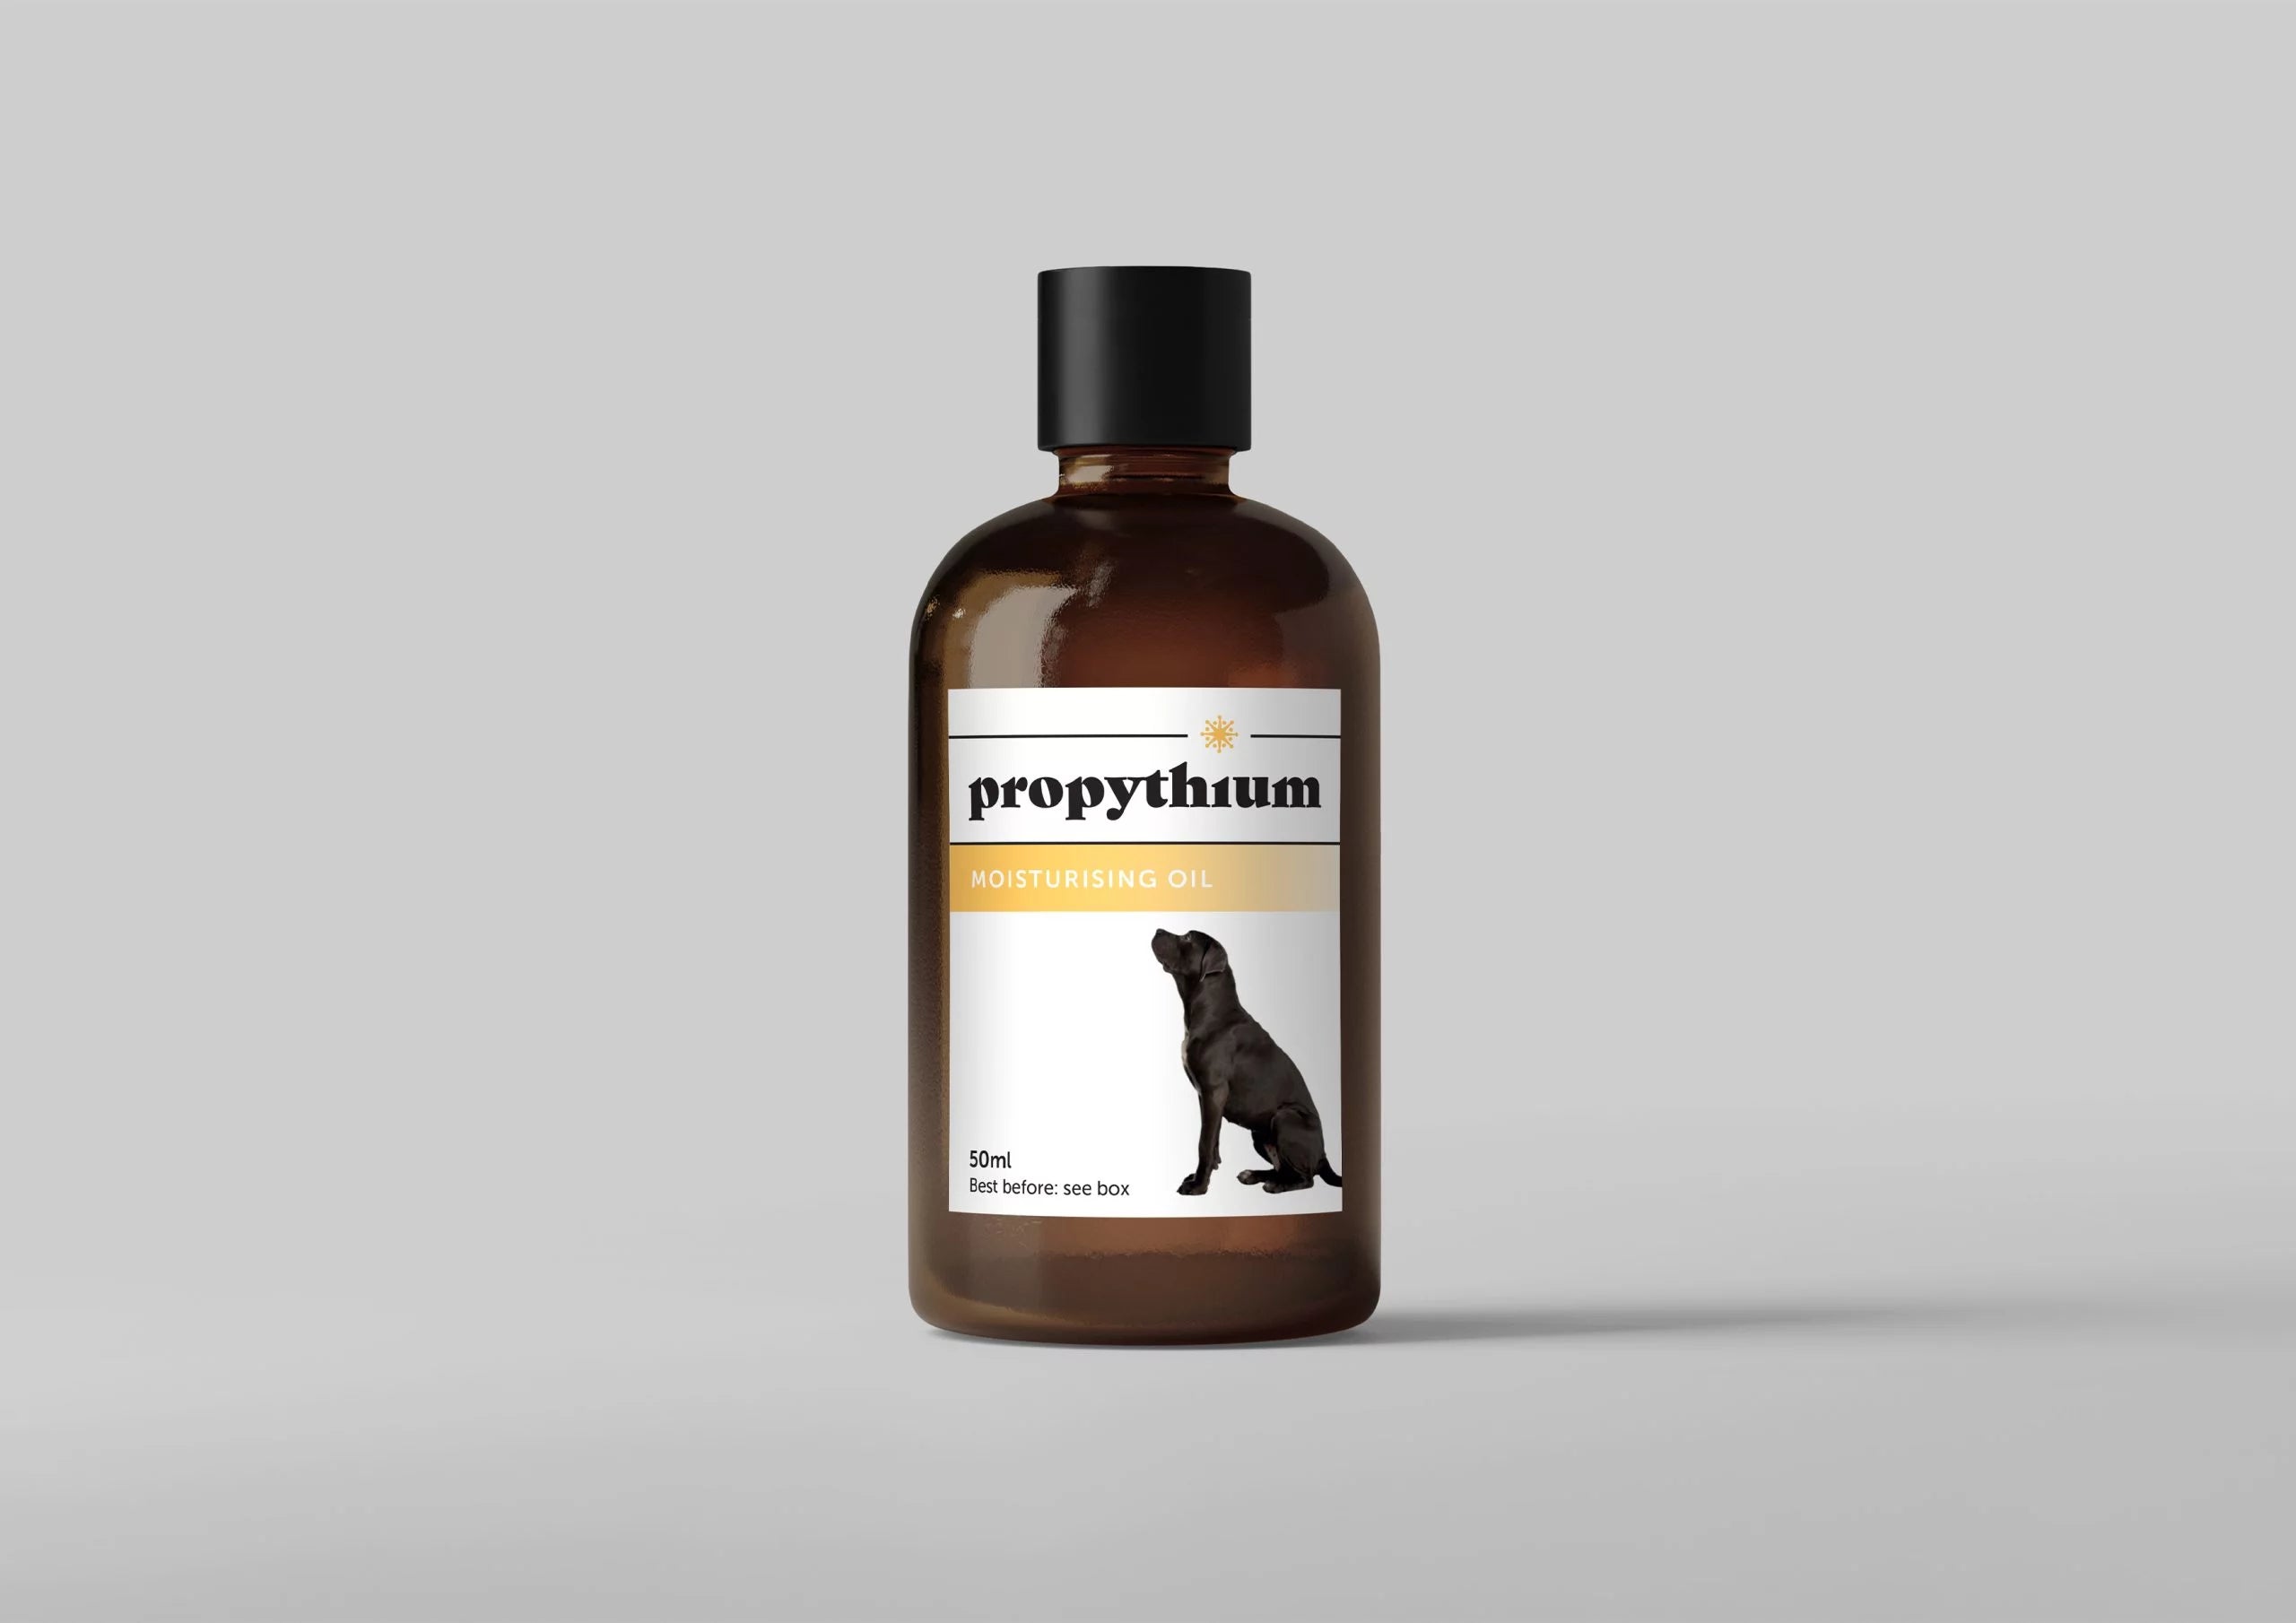 Propythium Moisturising Oil, 50ml